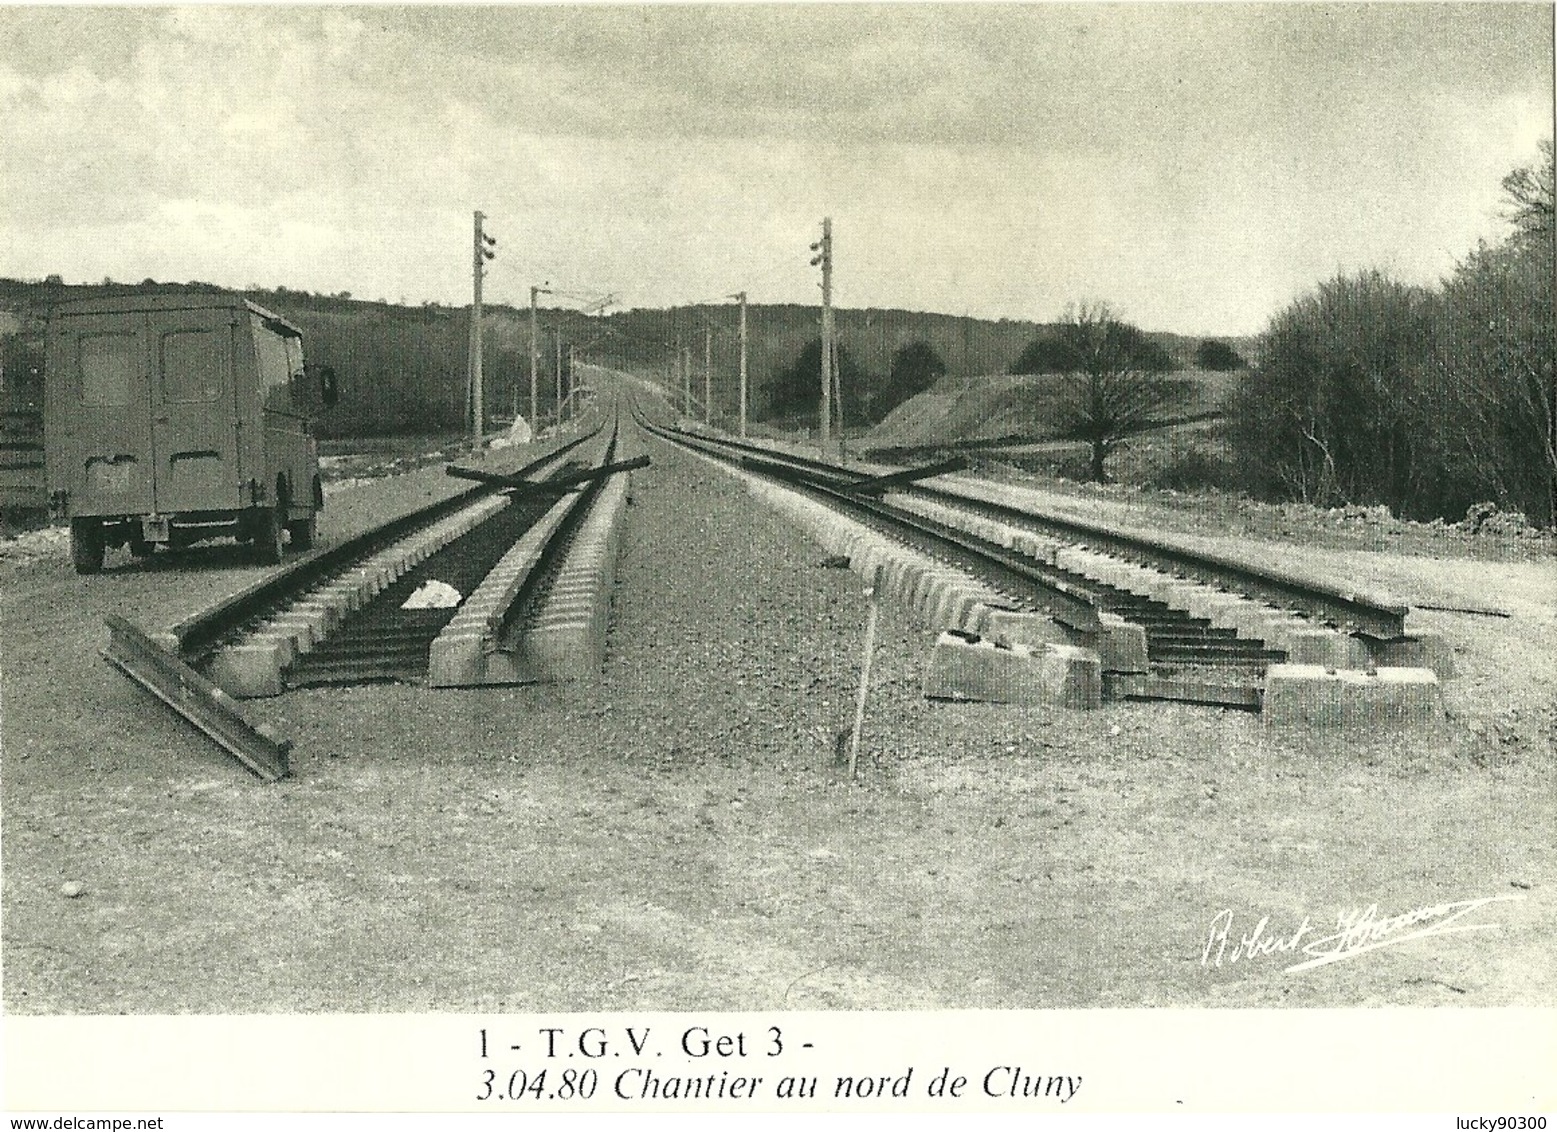 CHANTIER VOIE FERRÉE TGV - CONSTRUCTION CHEMIN DE FER ET PONT - SECTEUR CLUNY RN 79  - AVRIL 1980 - RARE 600 EXEMPLAIRES - Opere D'Arte